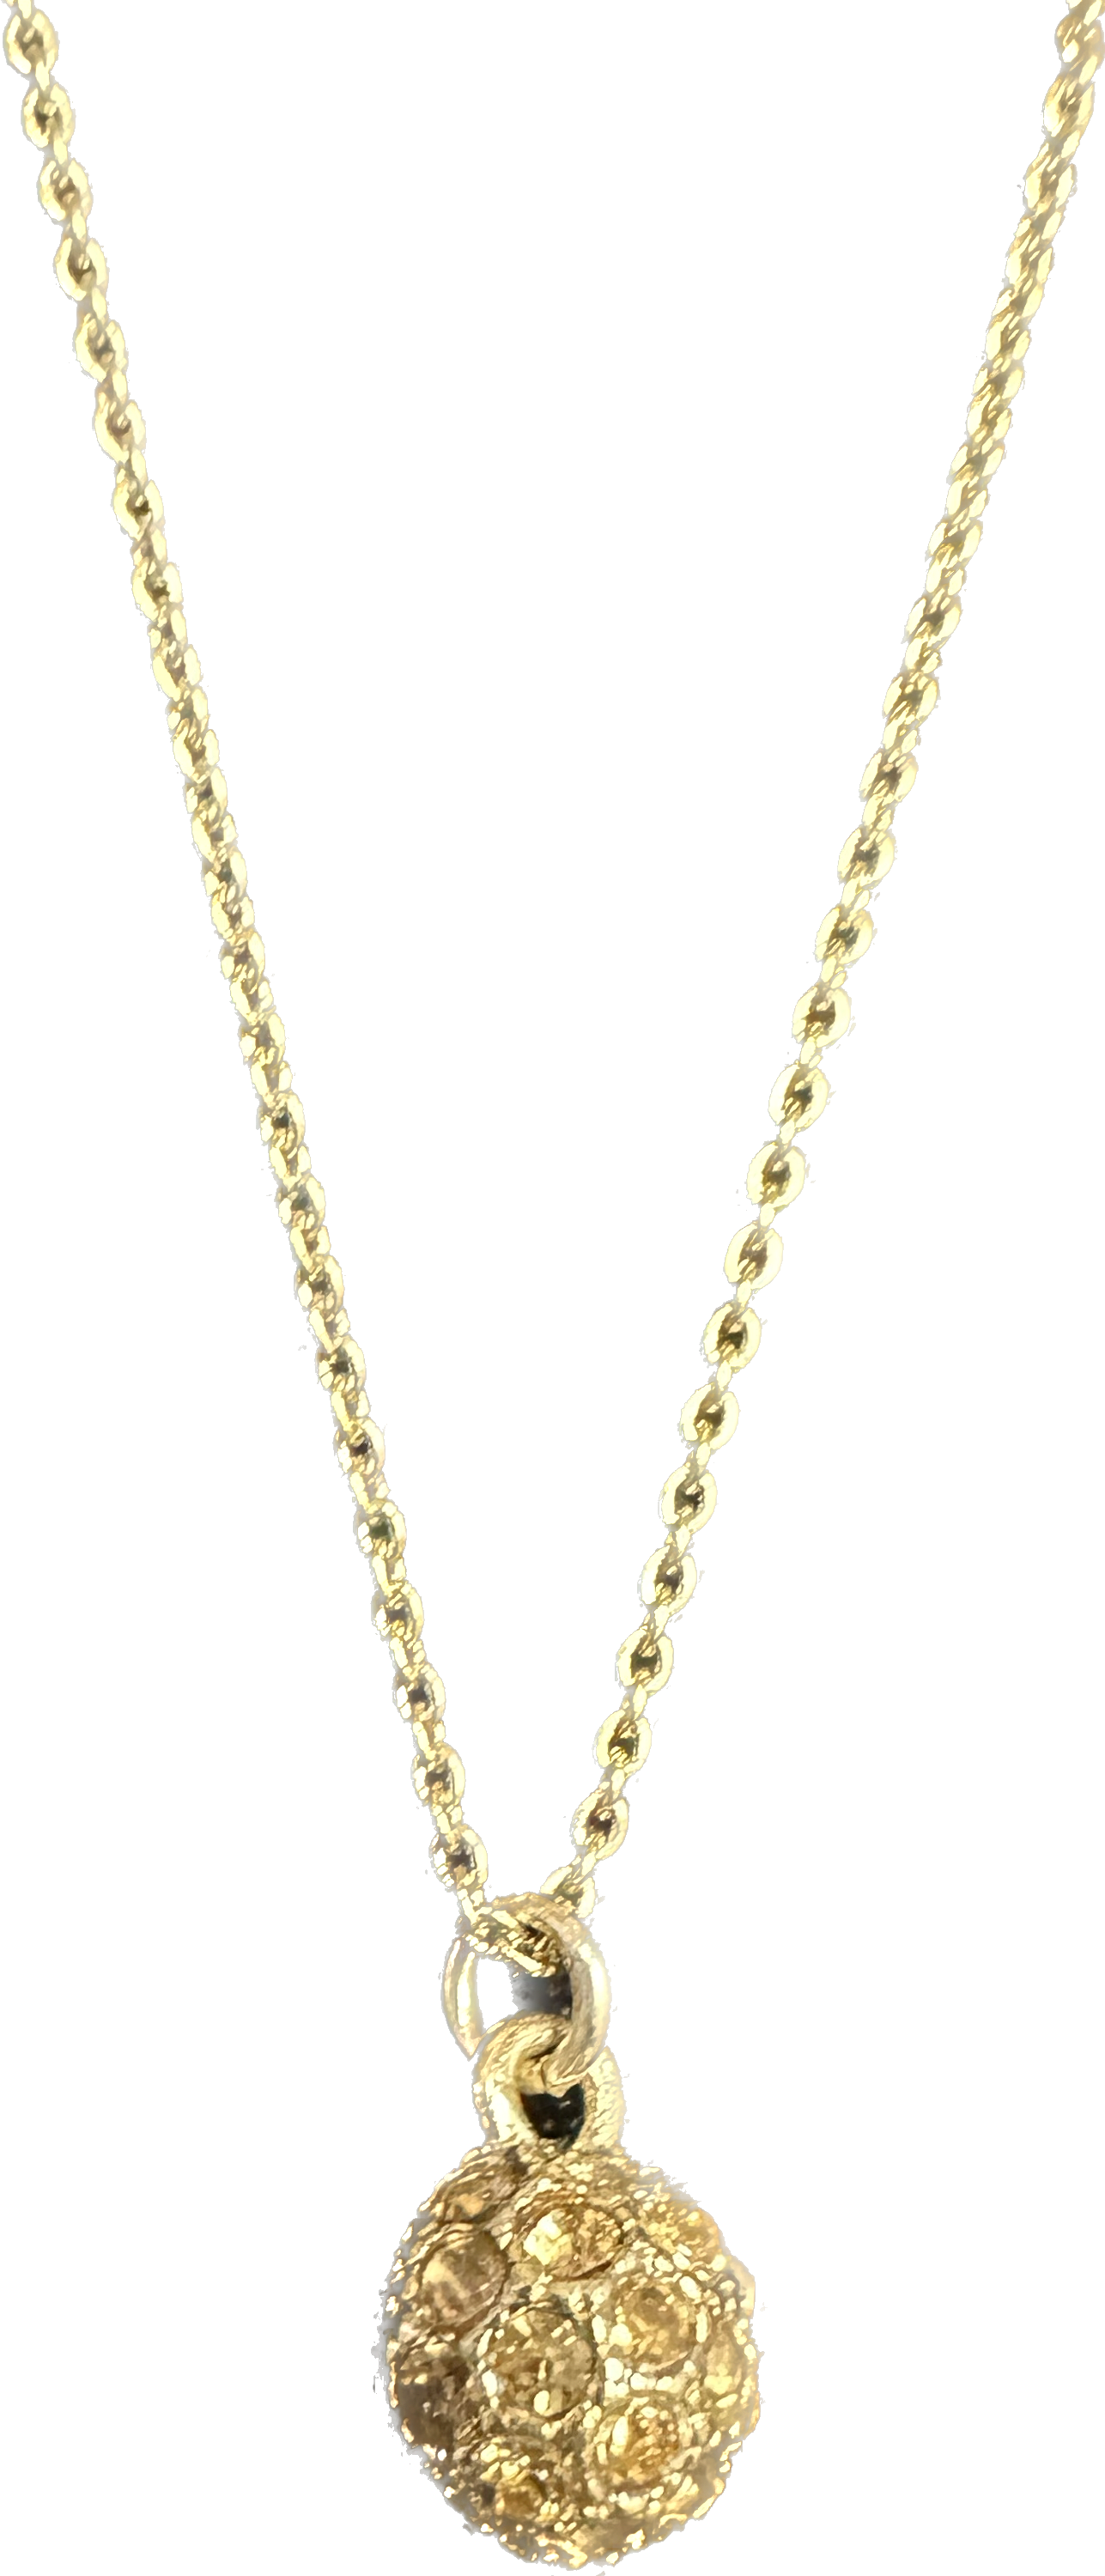 Wholesale Necklace